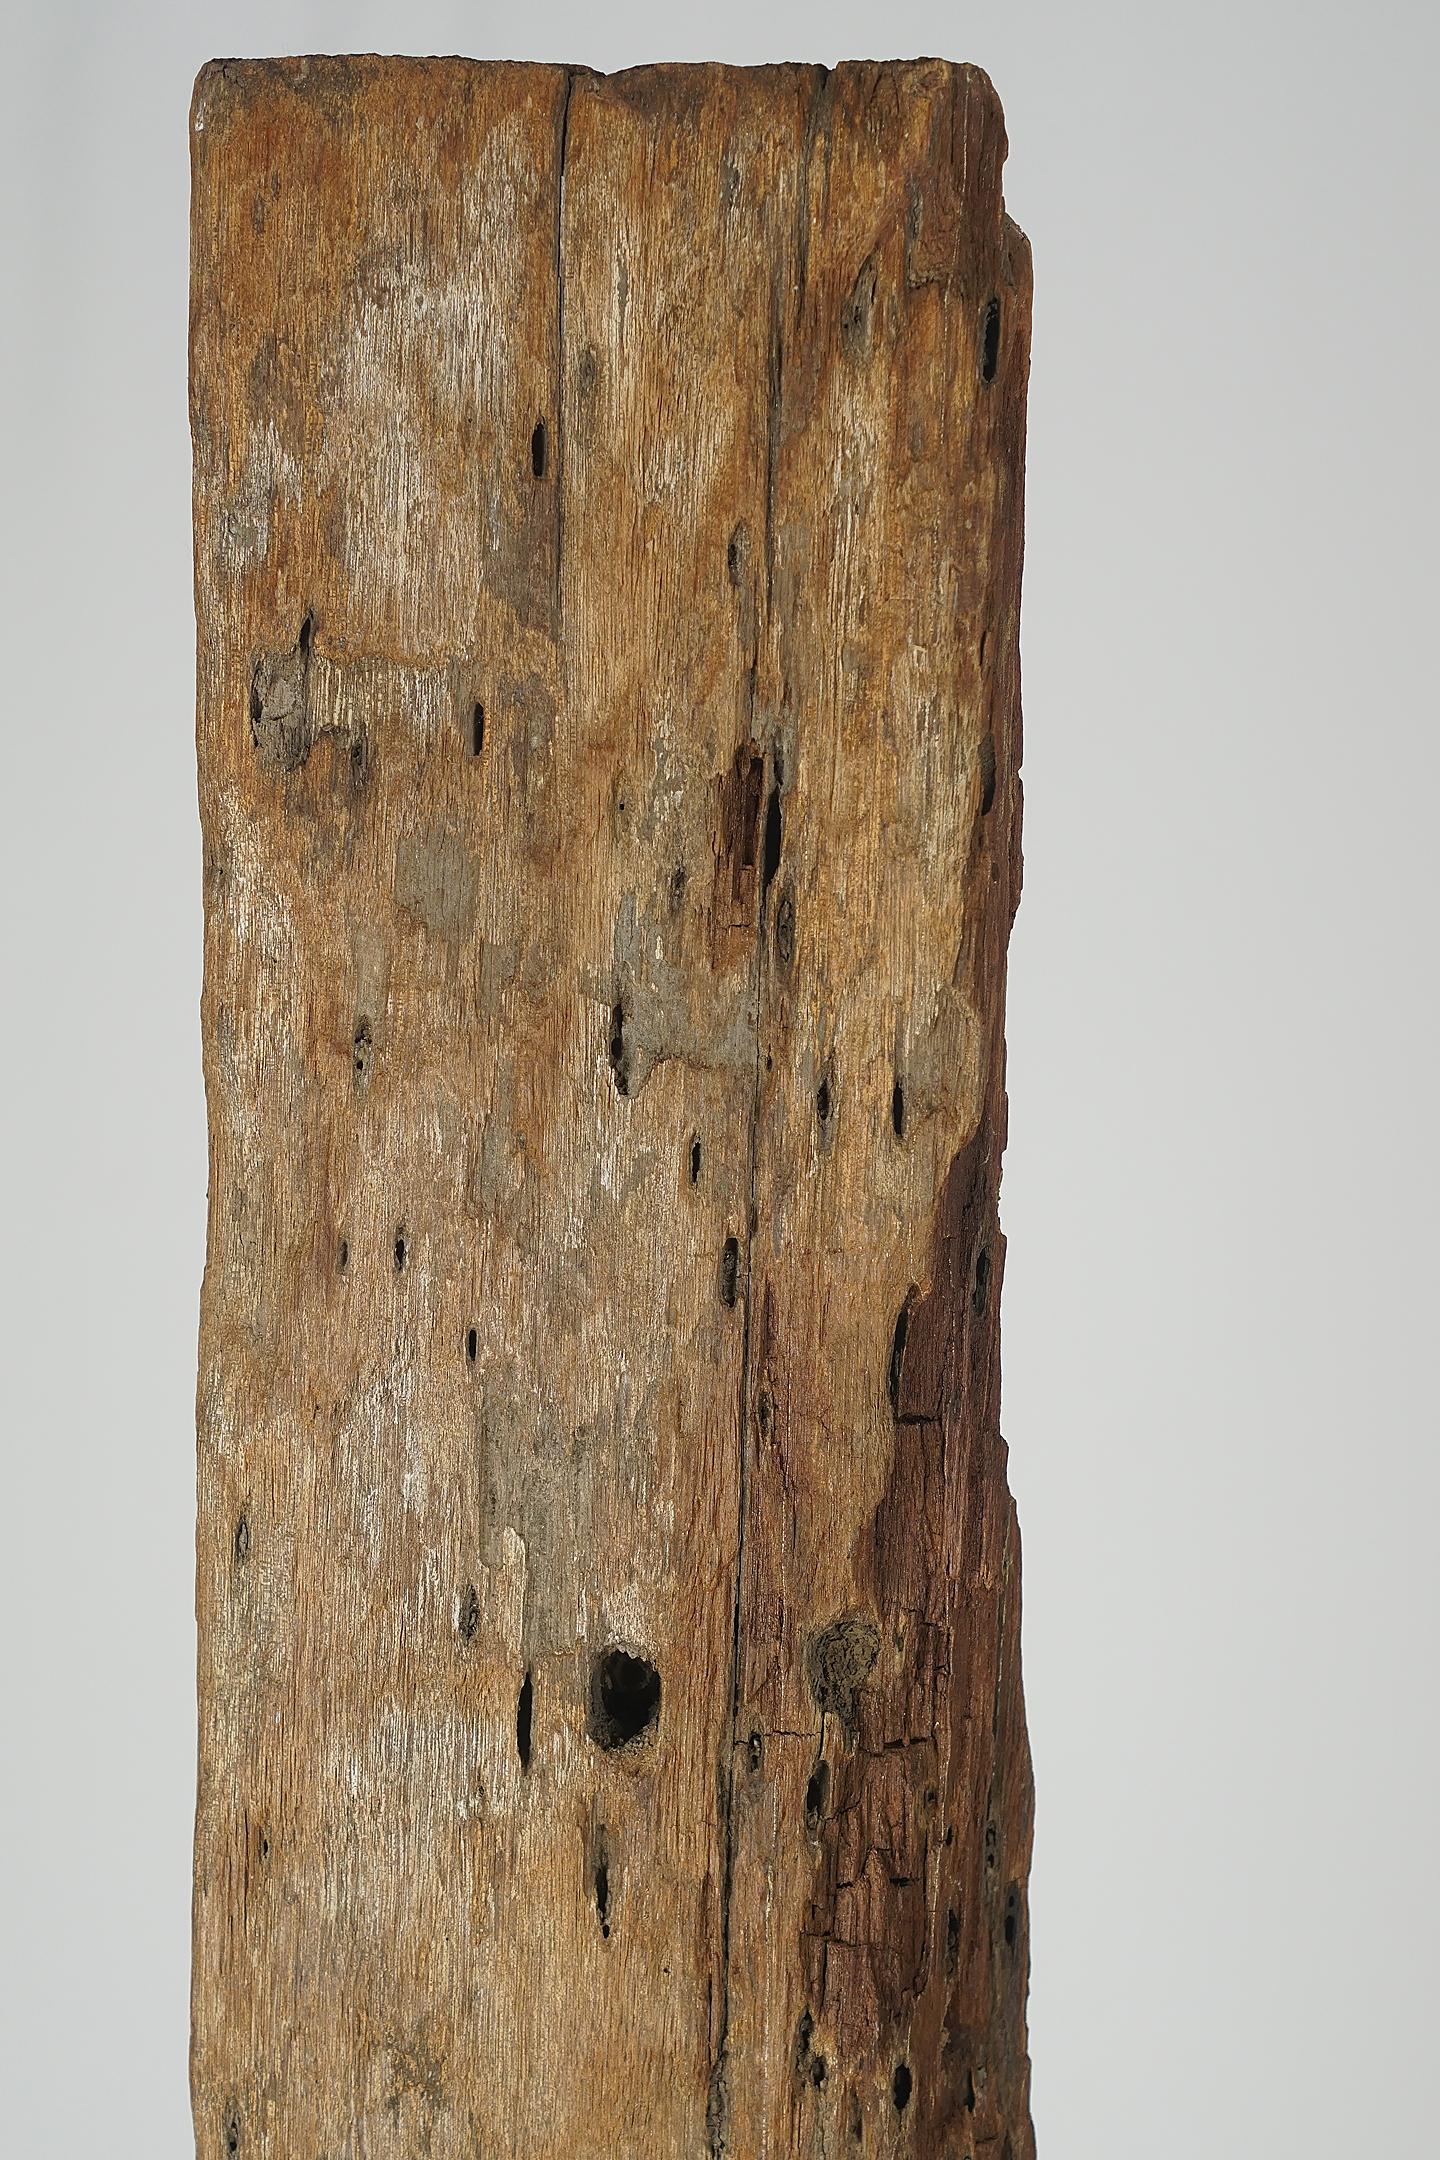 Abgerostetes Holz von einem alten Haus.

Schönes organisches Friedensholz aus einem alten Haus mit erstaunlichen Erosionsdetails.
Das Einölen der Wurzel verleiht ihr ein besonderes, einzigartiges Finish.